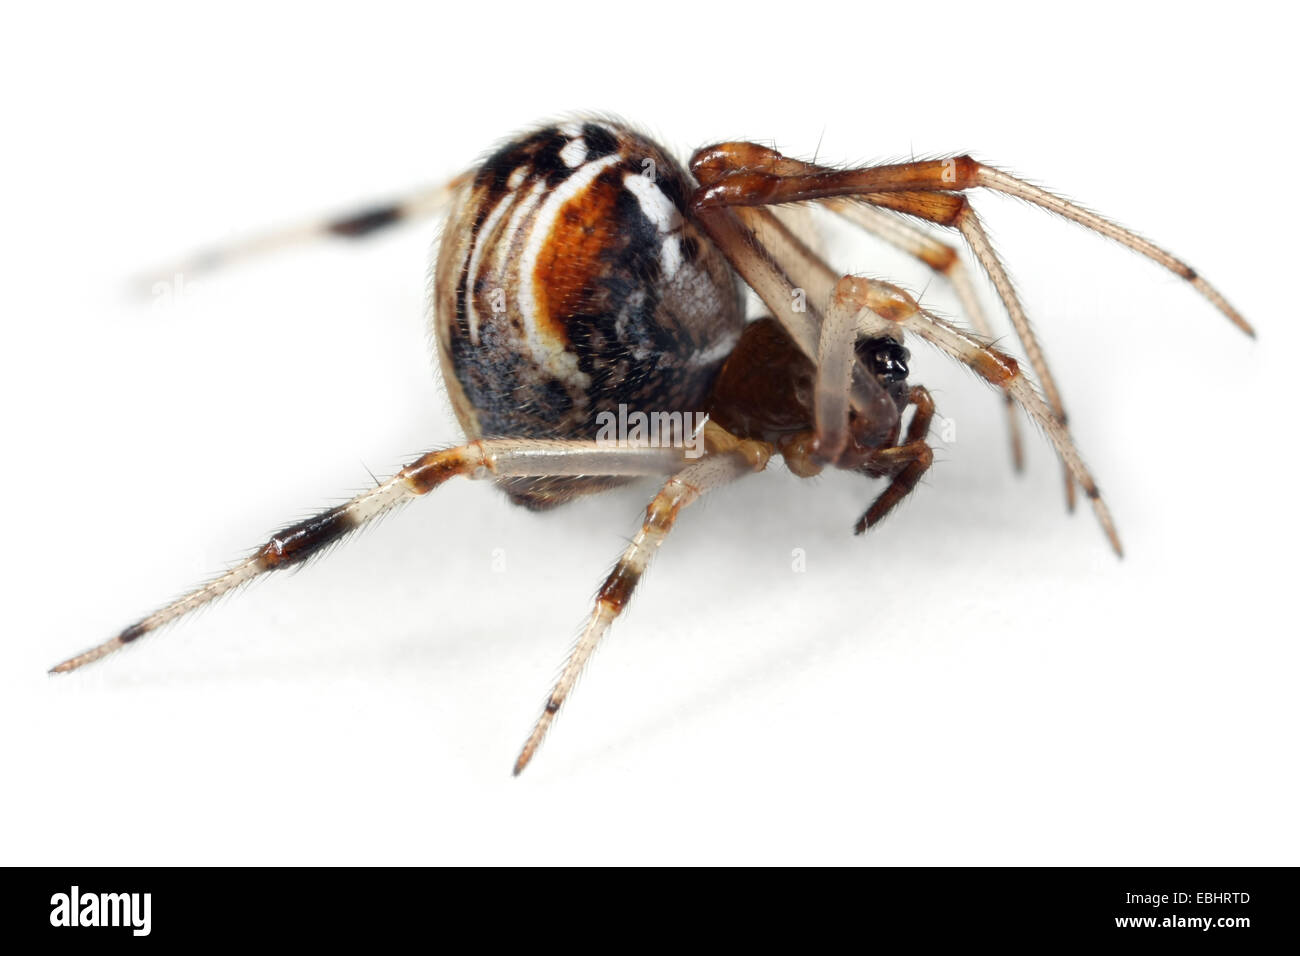 Une araignée femelle araignée weaver (Parasteatoda lunata) sur un fond blanc. Banque D'Images